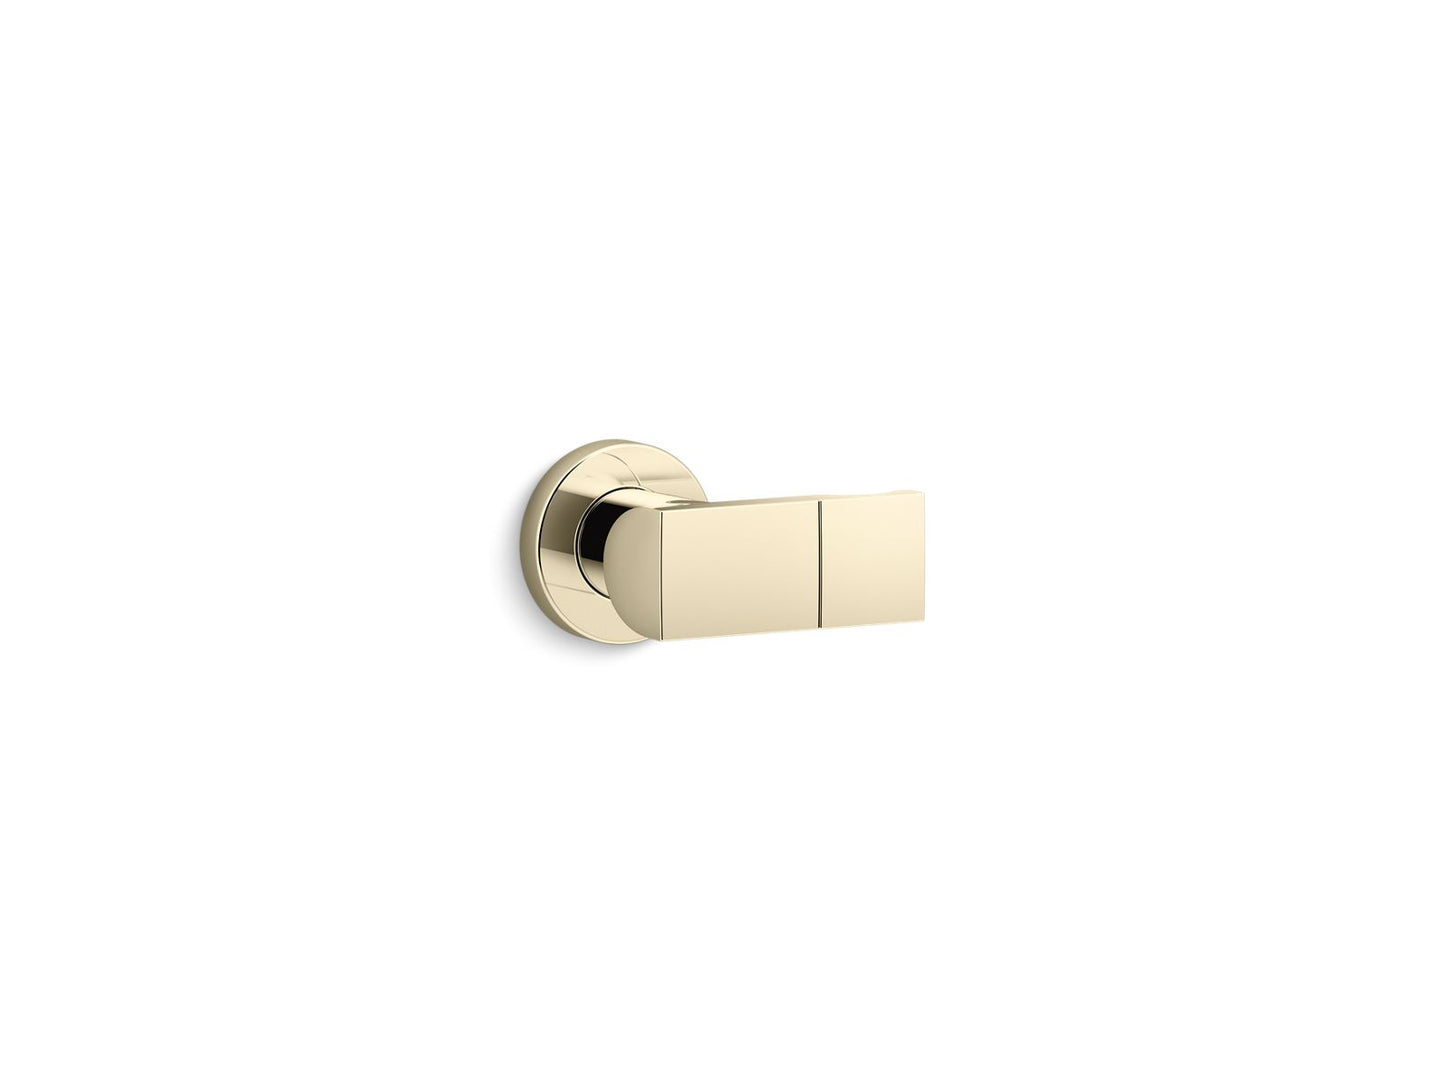 KOHLER K-98349-AF Exhale Adjustable Wall Holder In Vibrant French Gold